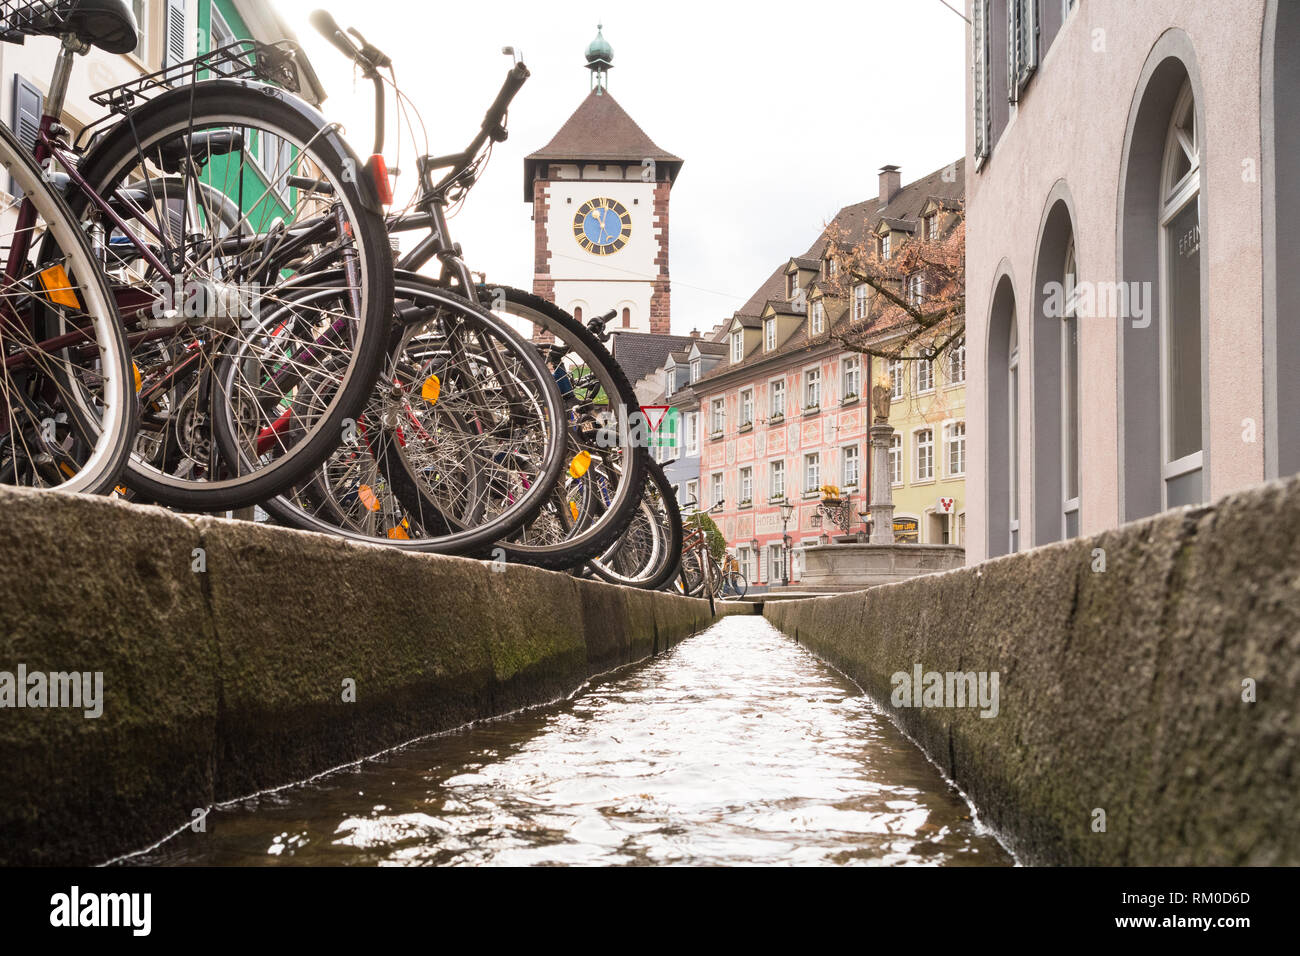 Freiburg im Breisgau, Germania - Schwabentor (città sveva di gate), di biciclette e Bachle (acqua riempito runnells alimentata dalla Dreisam), Germania, Europa Foto Stock